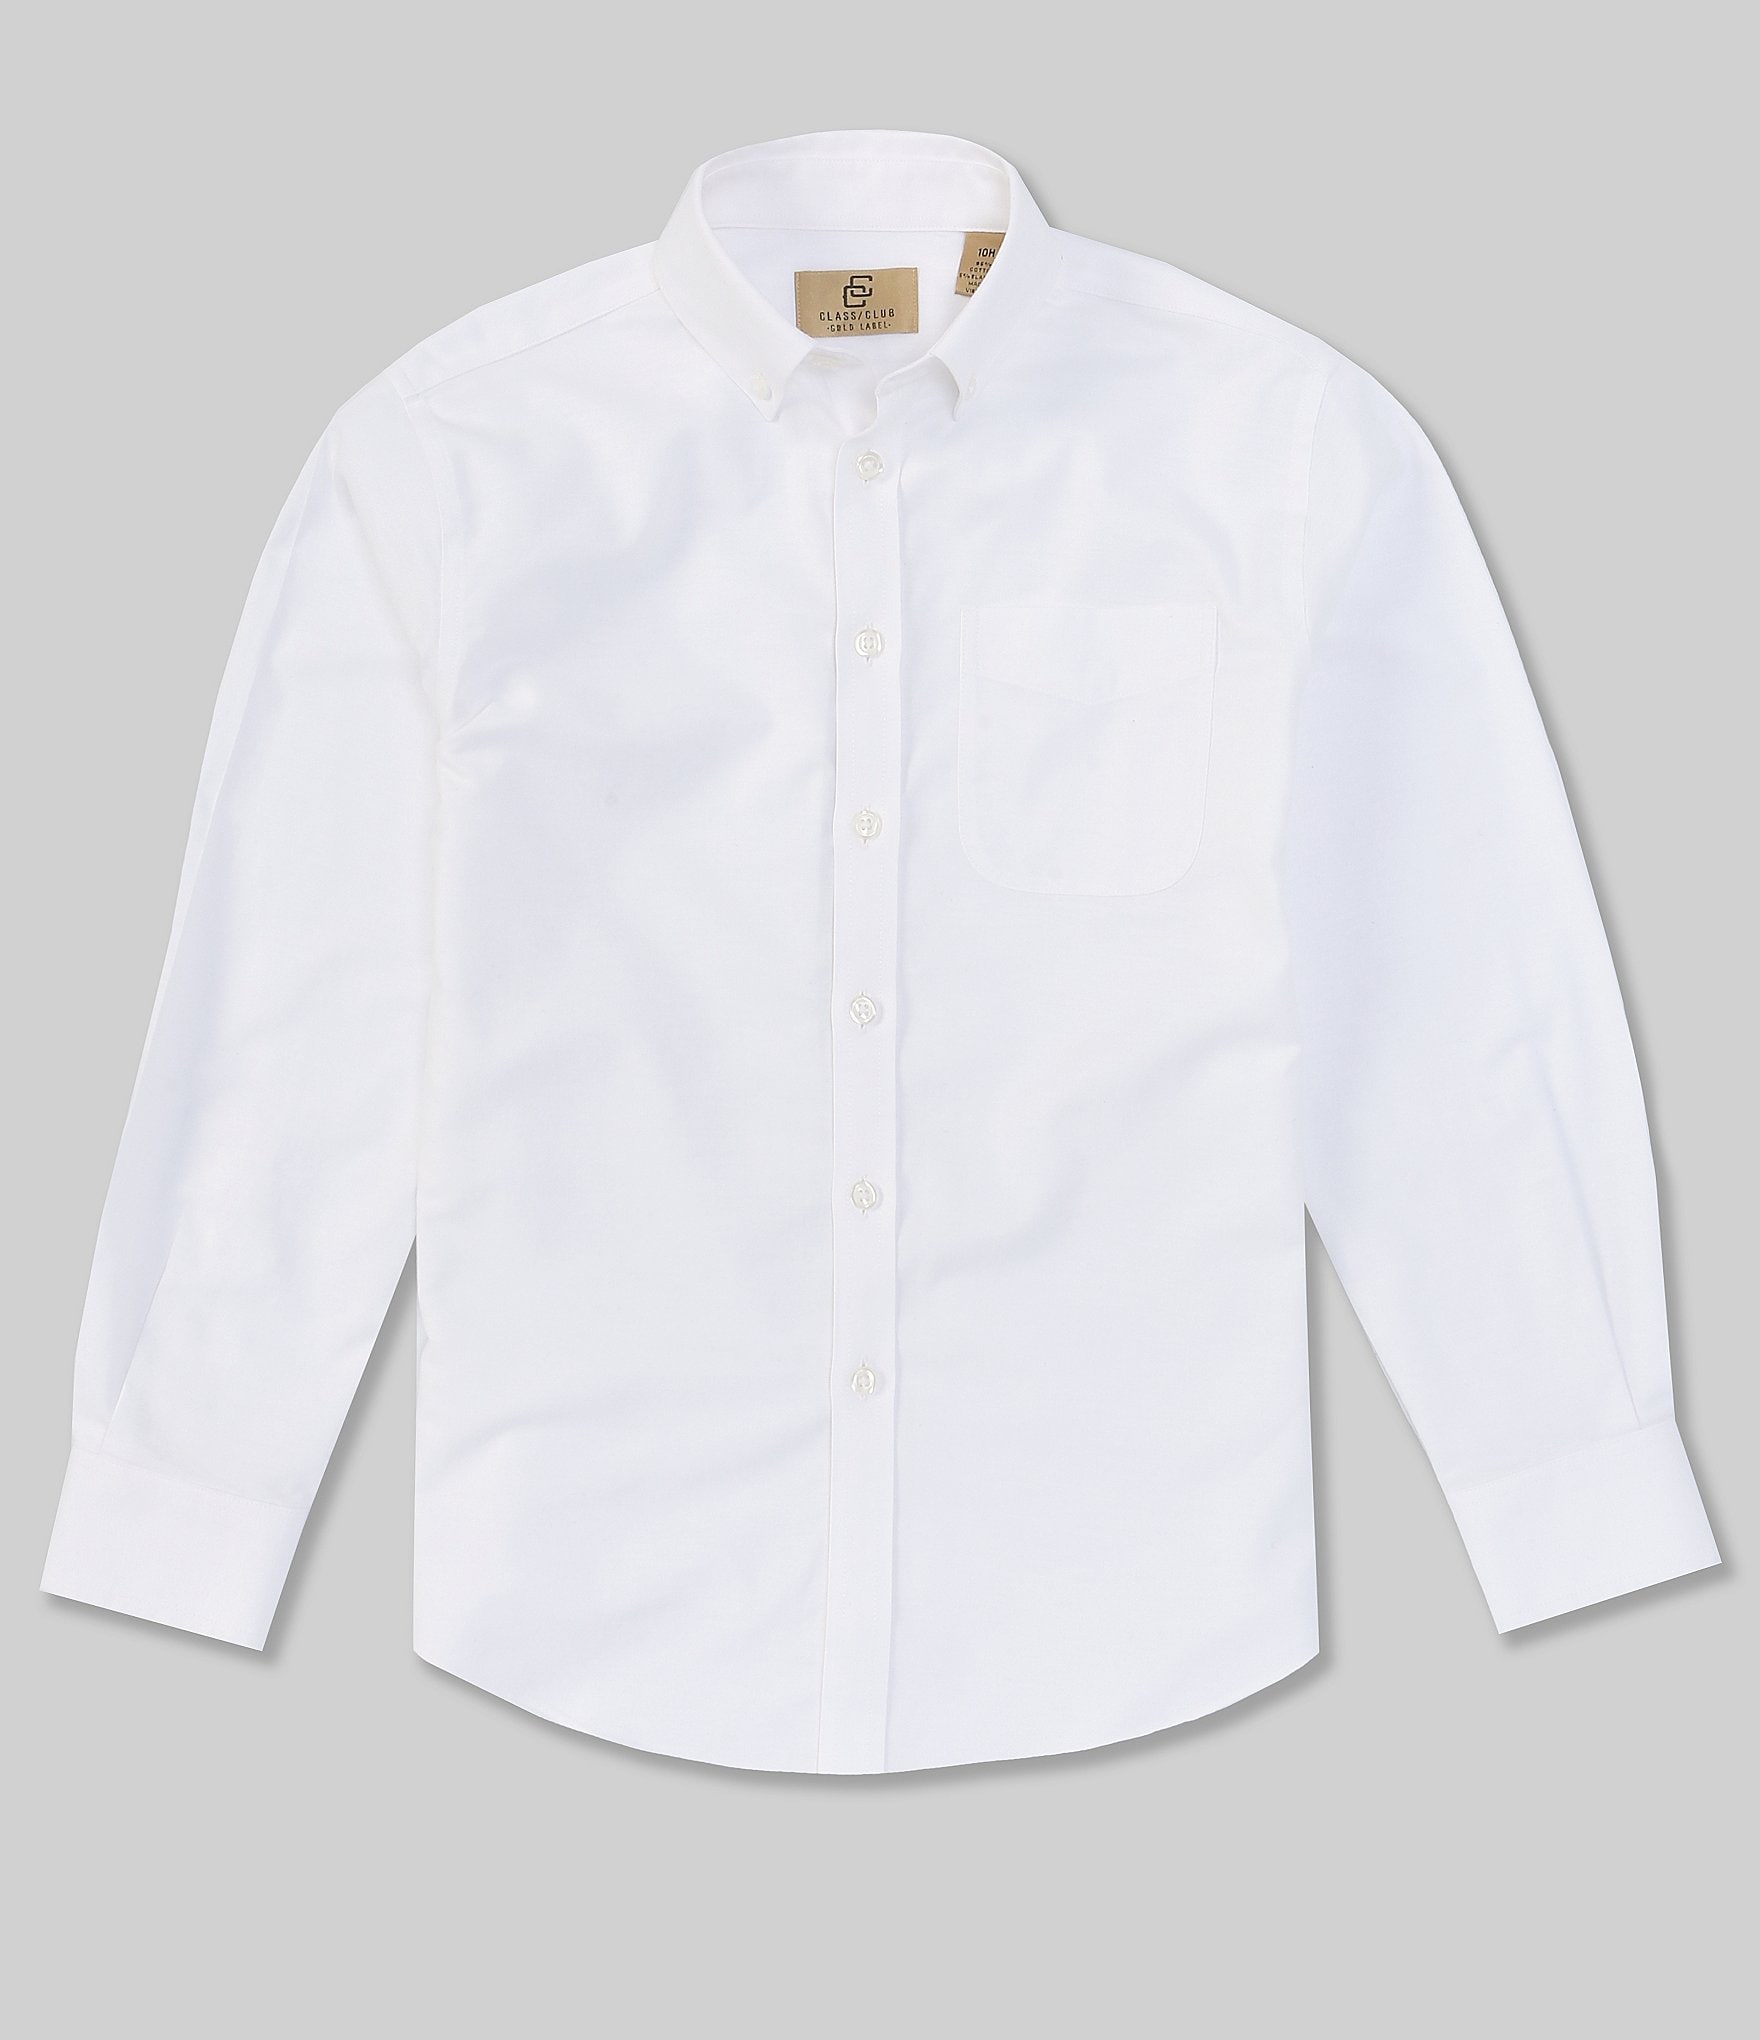 dillards white dress shirts